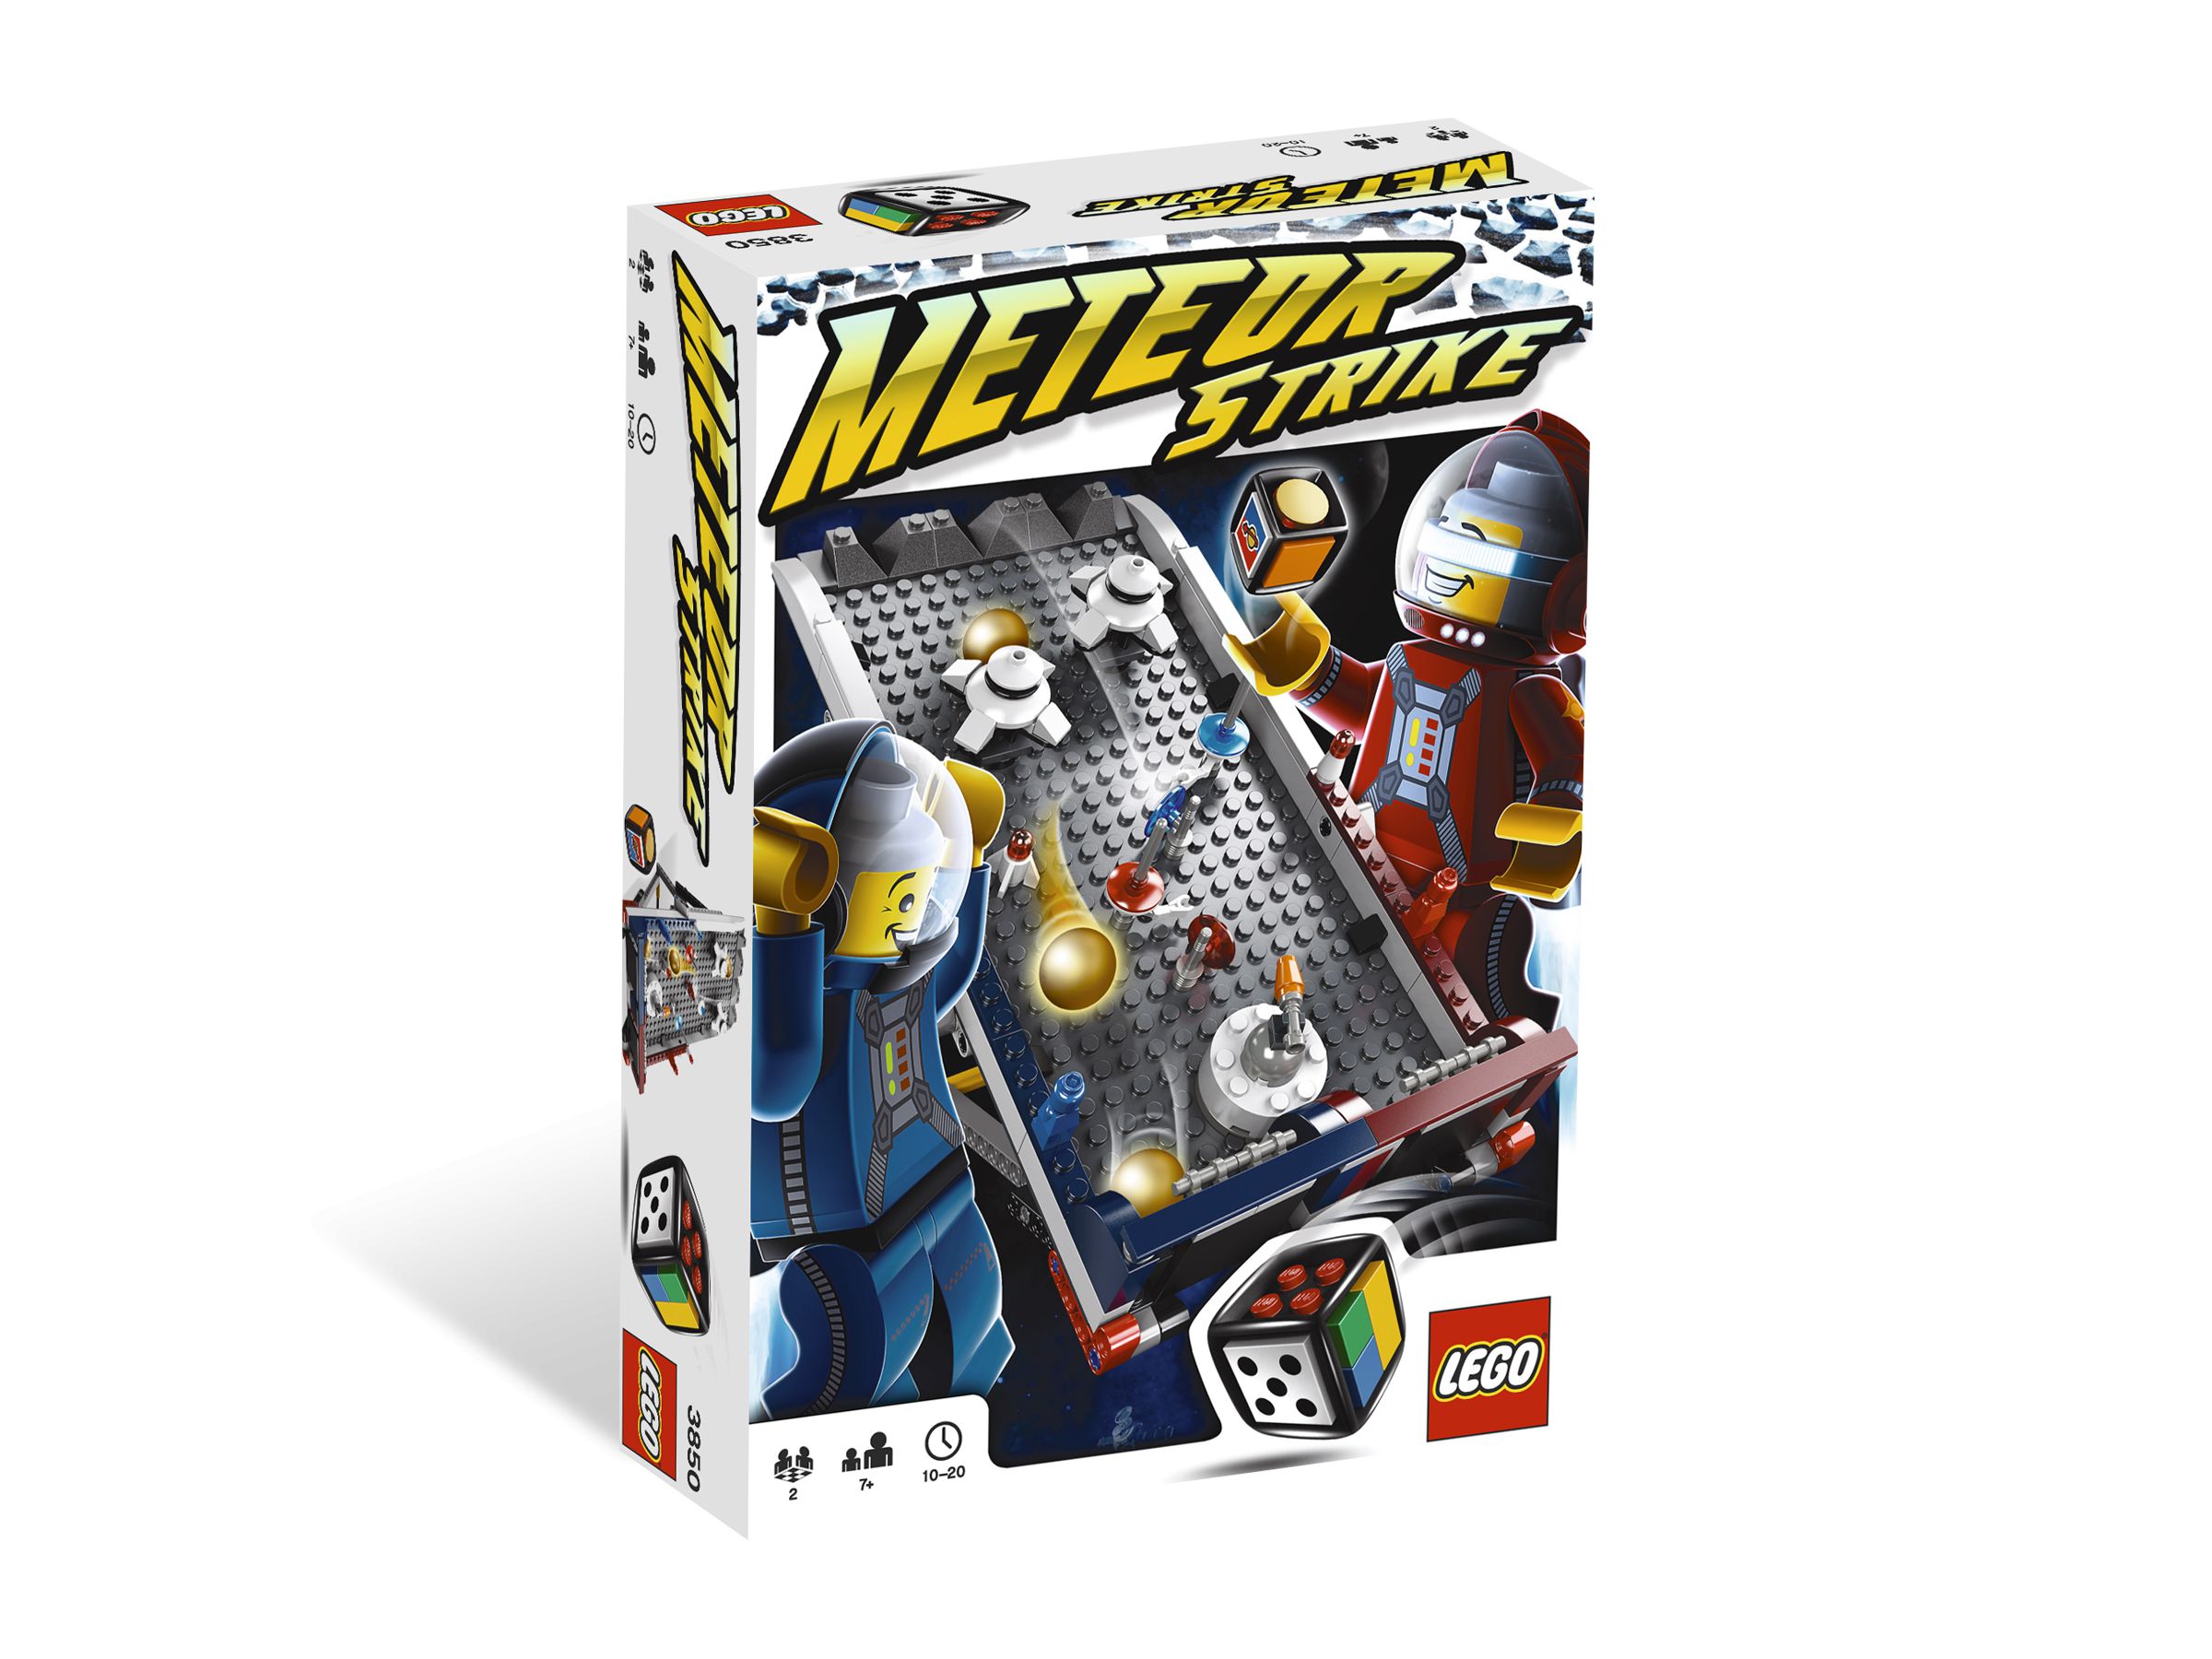 LEGO Games 3850 Meteor Strike LEGO_3850.jpg